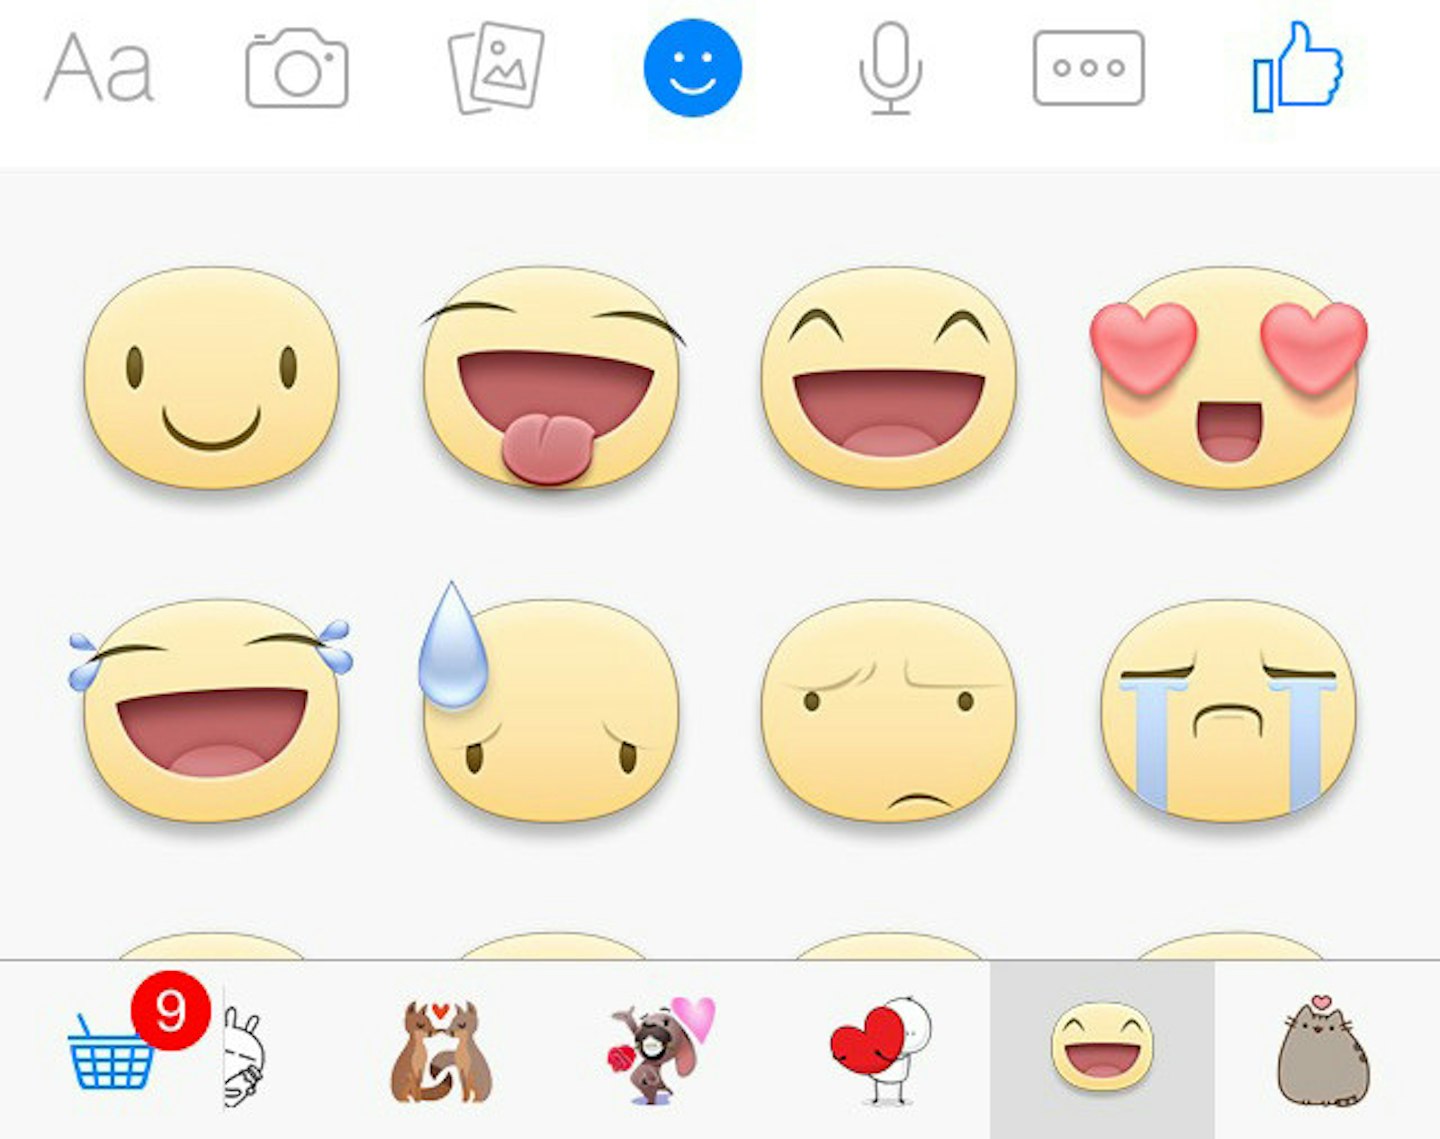 Facebook Messenger Symbols Explained